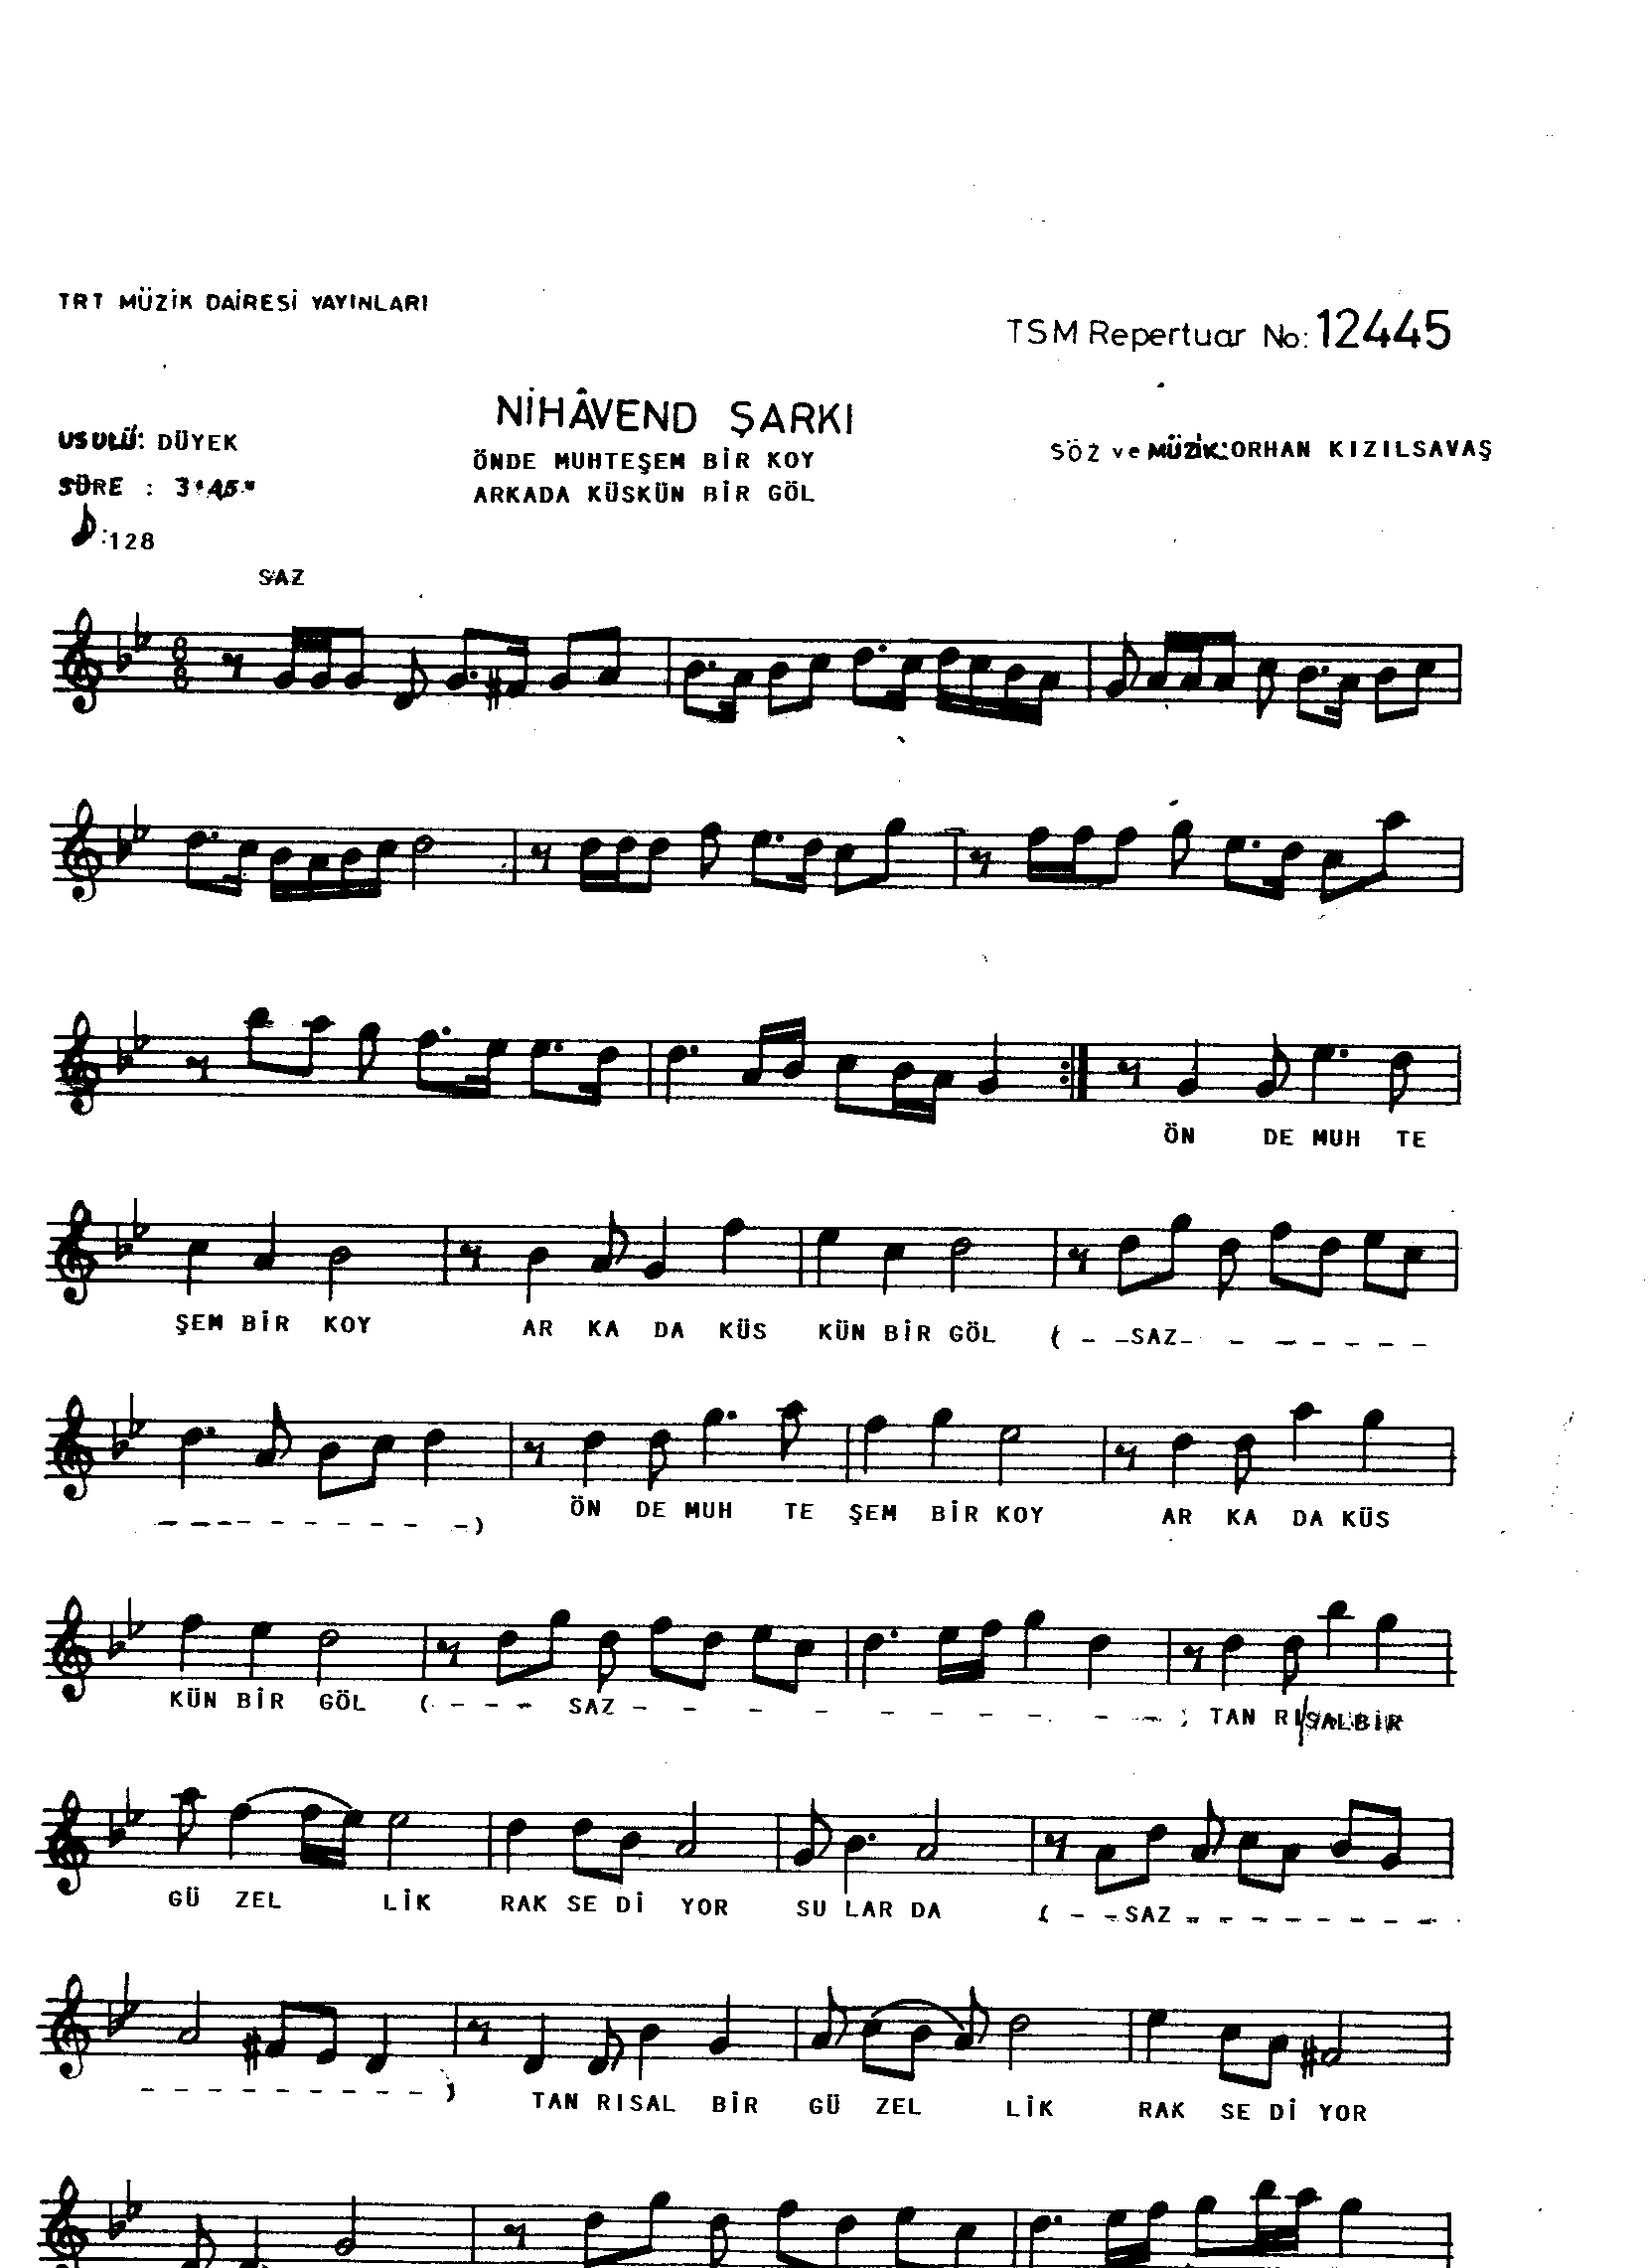 Nihâvend - Şarkı - Orhan Kızılsavaş - Sayfa 1